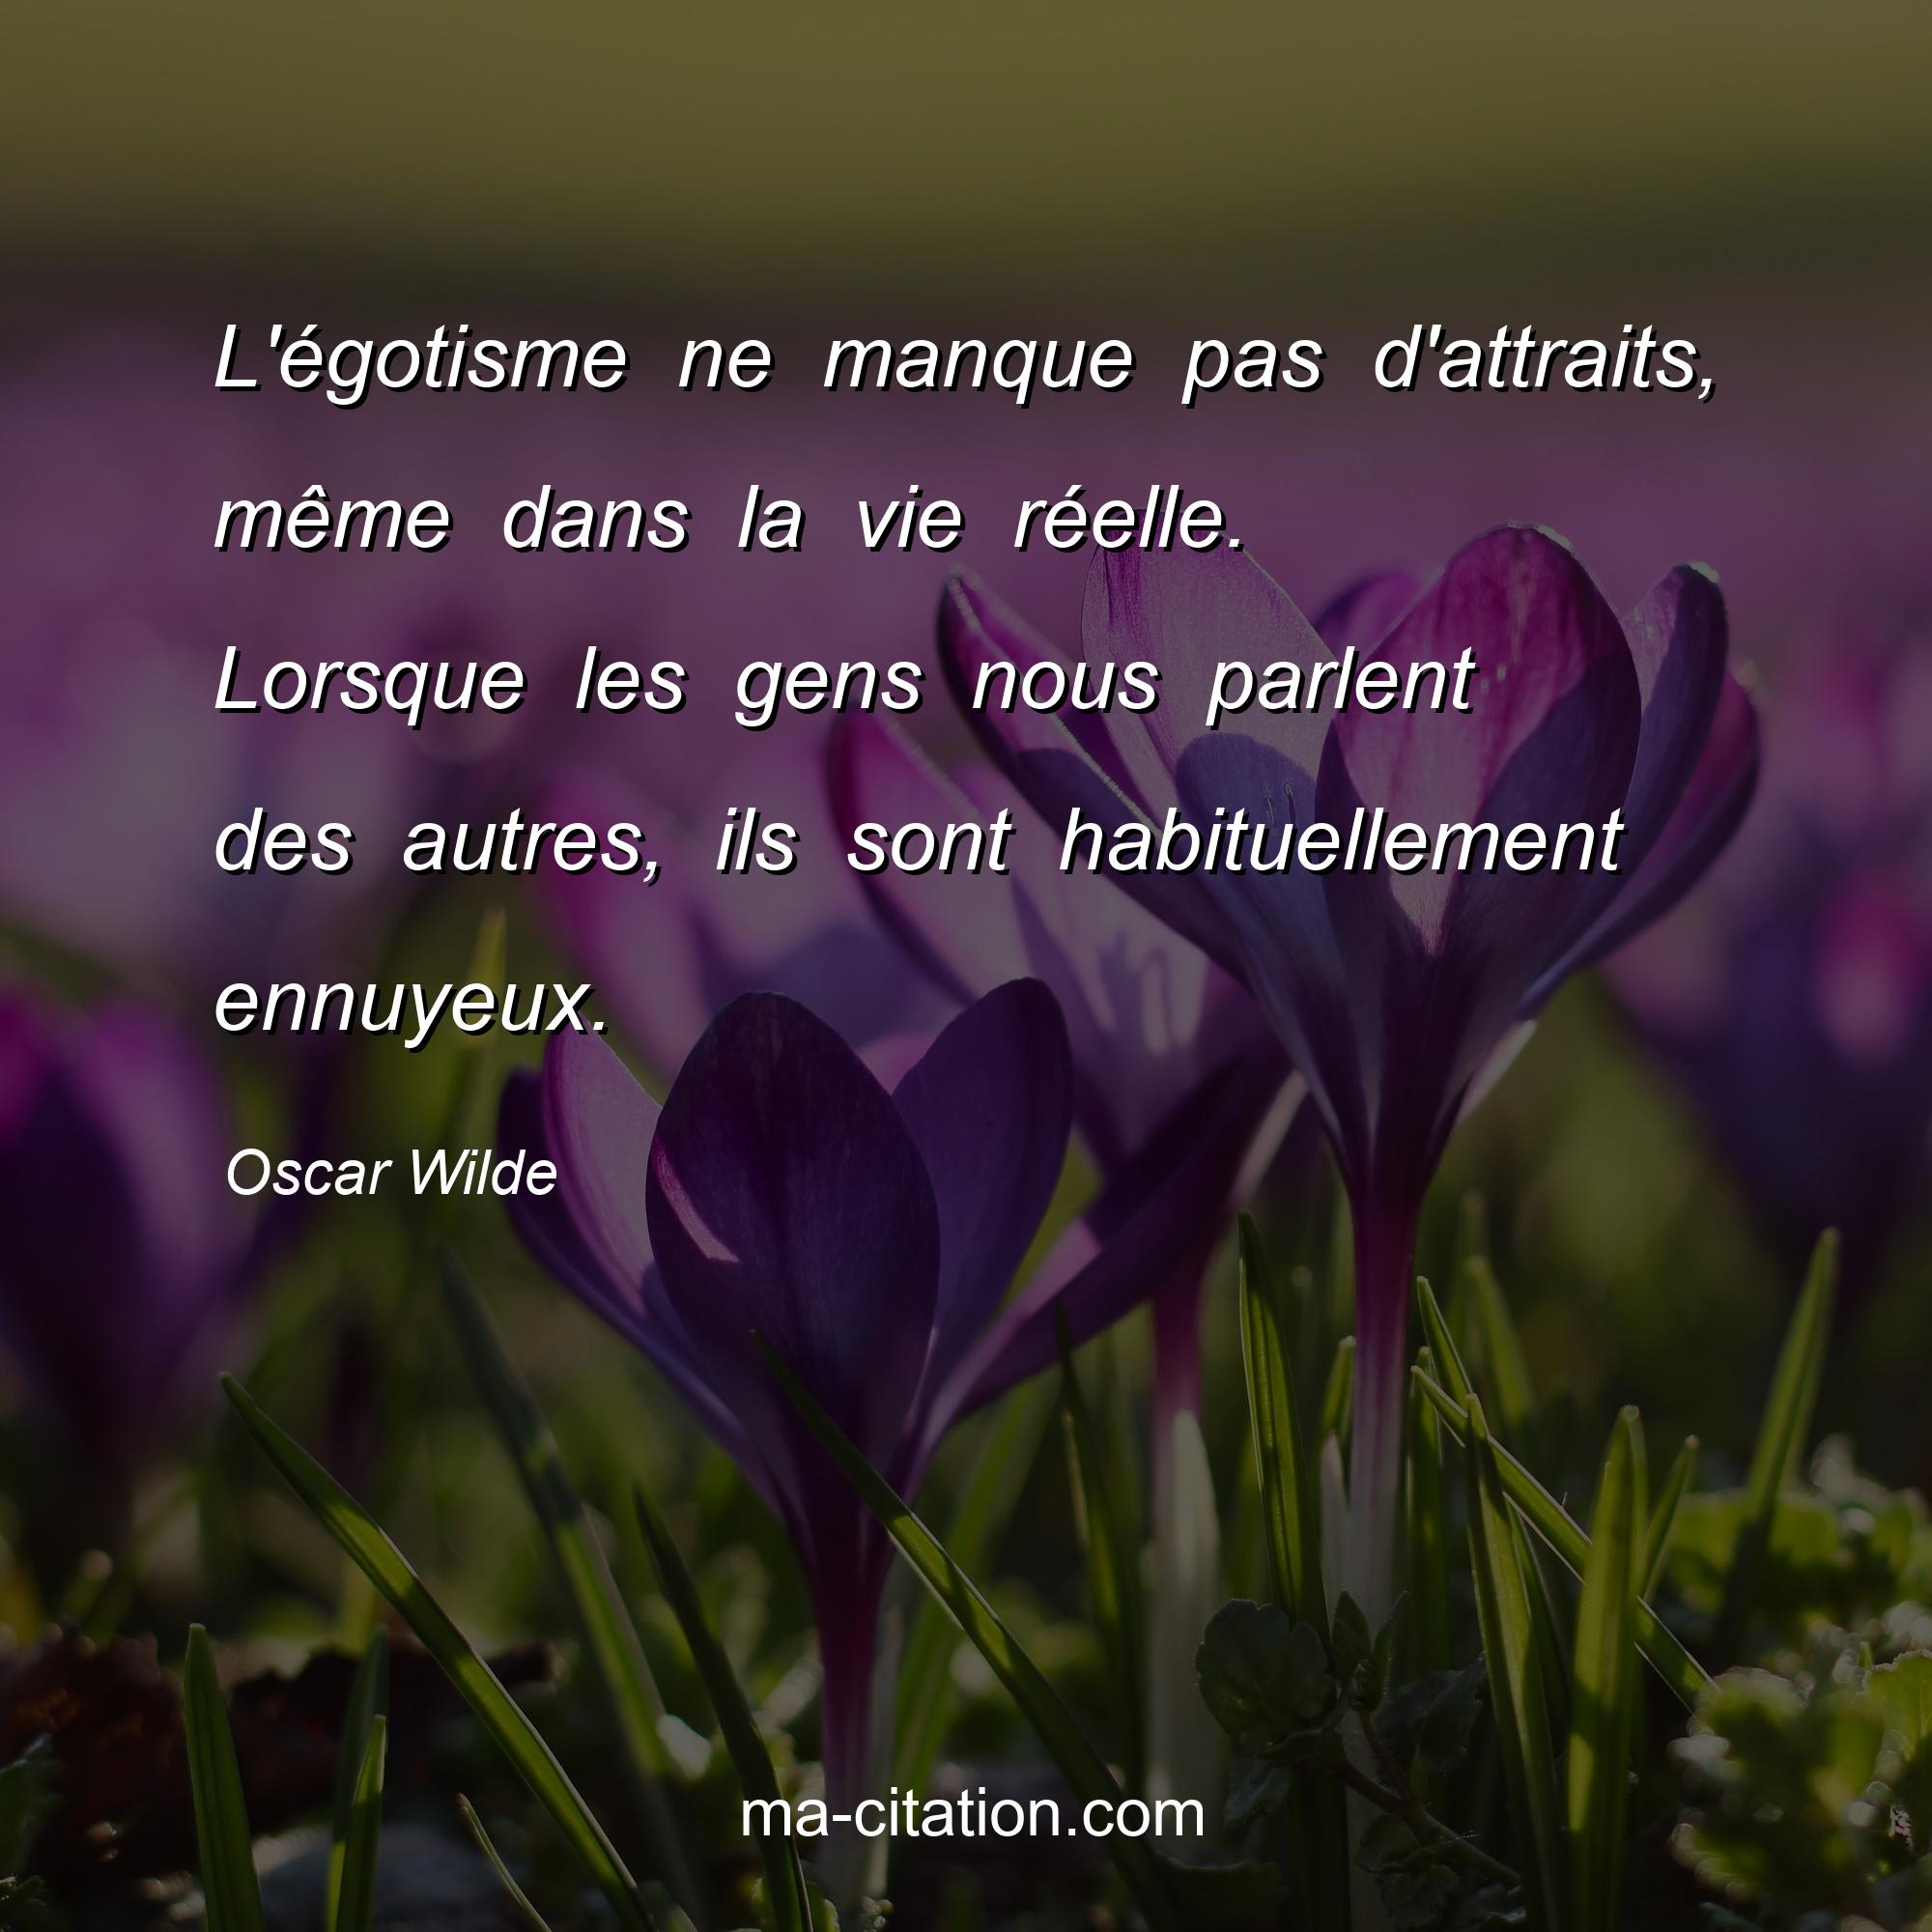 Oscar Wilde : L'égotisme ne manque pas d'attraits, même dans la vie réelle. Lorsque les gens nous parlent des autres, ils sont habituellement ennuyeux.